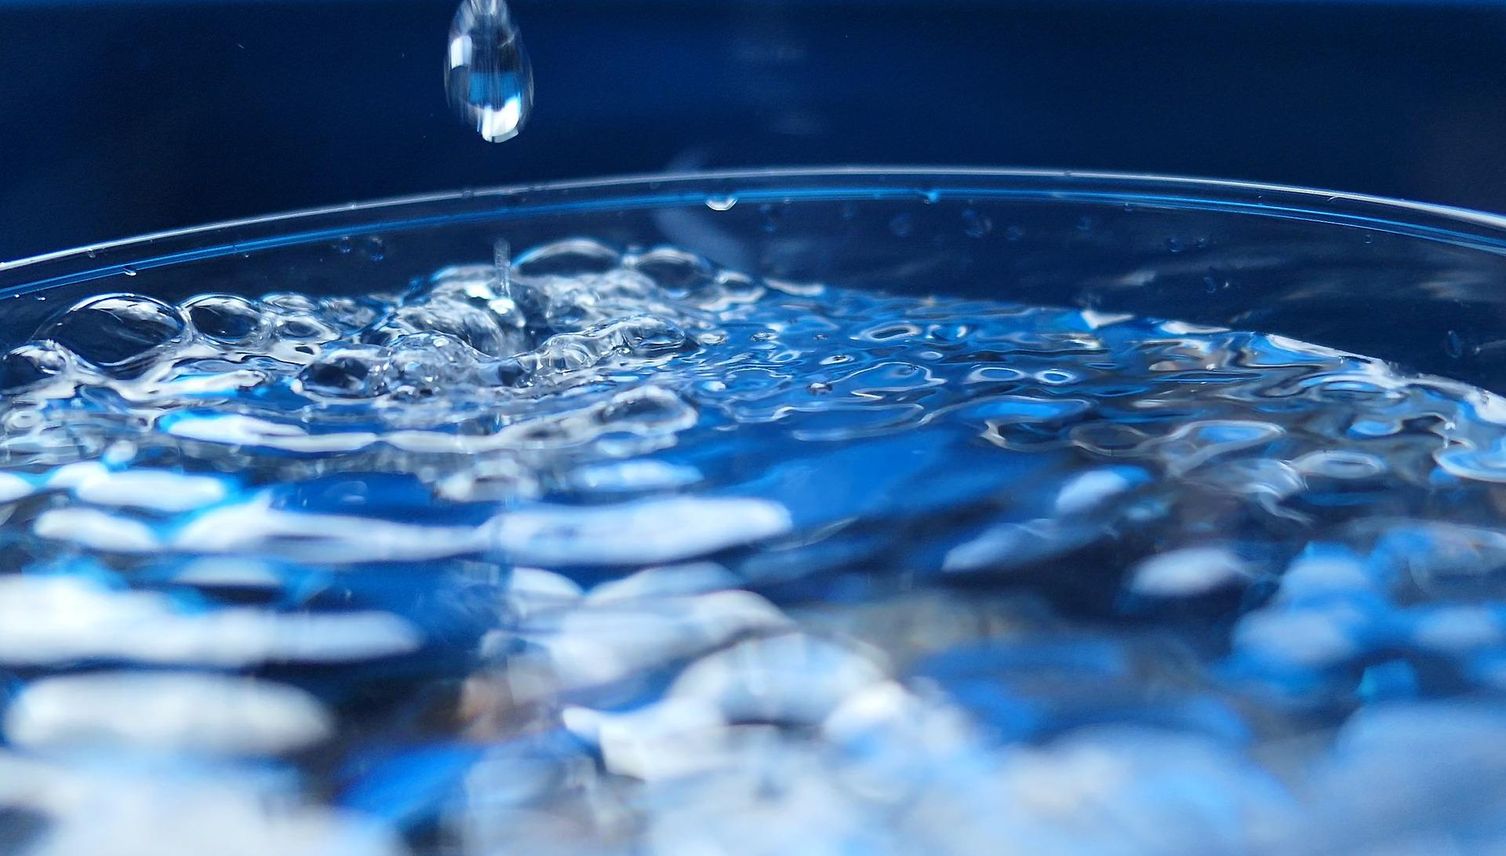 Trinkwasser-Panne: So scheiterte die Kommunikation